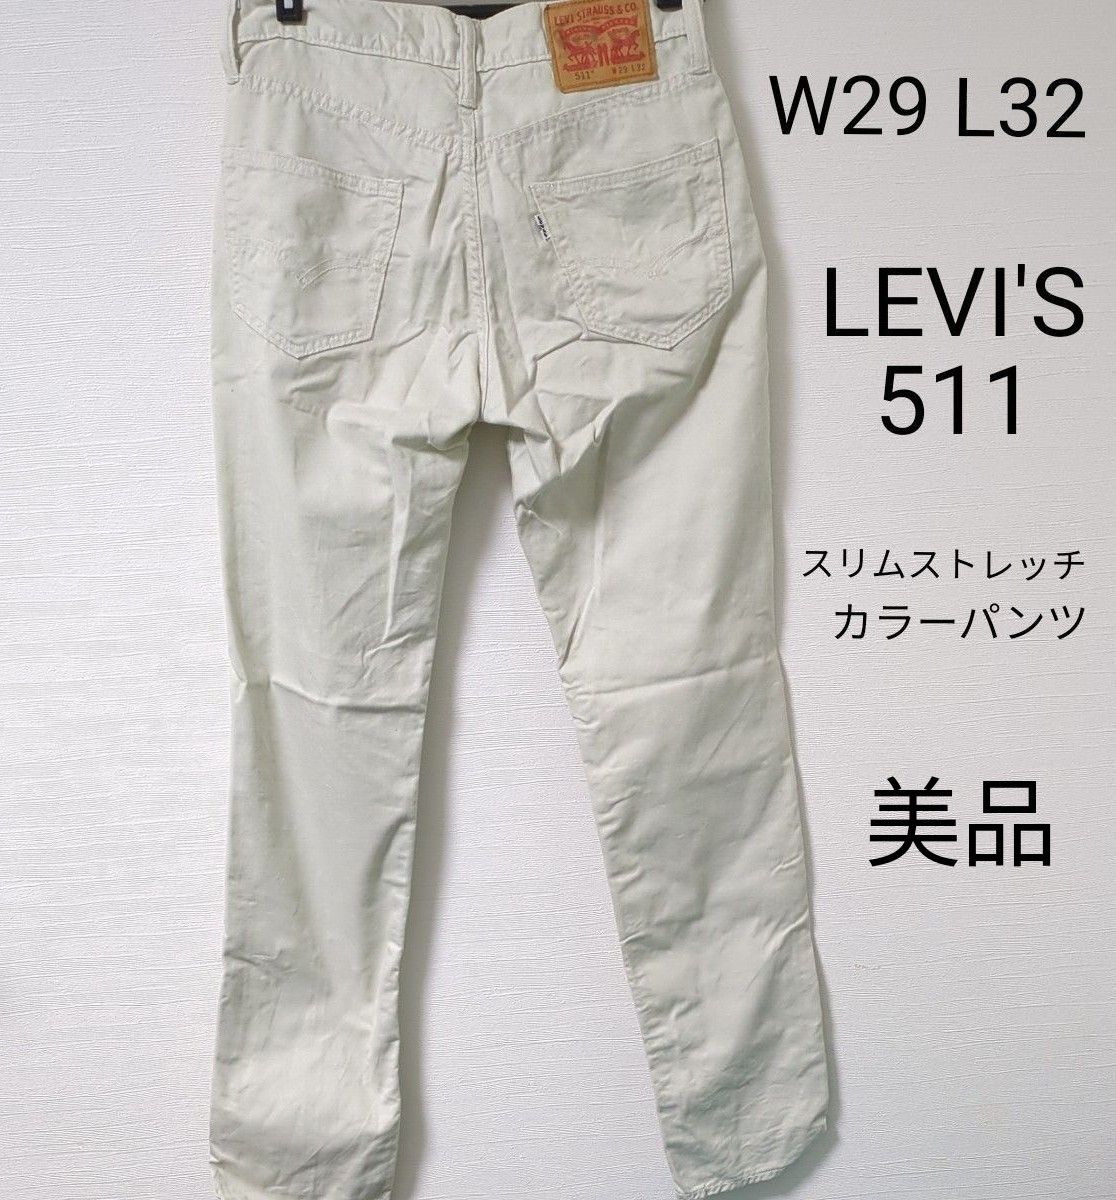 LEVI'S 511 W 29 L 32 カラー パンツ リーバイス サンド ベージュ ボトムス 美品 ストレッチ スリム ズボン